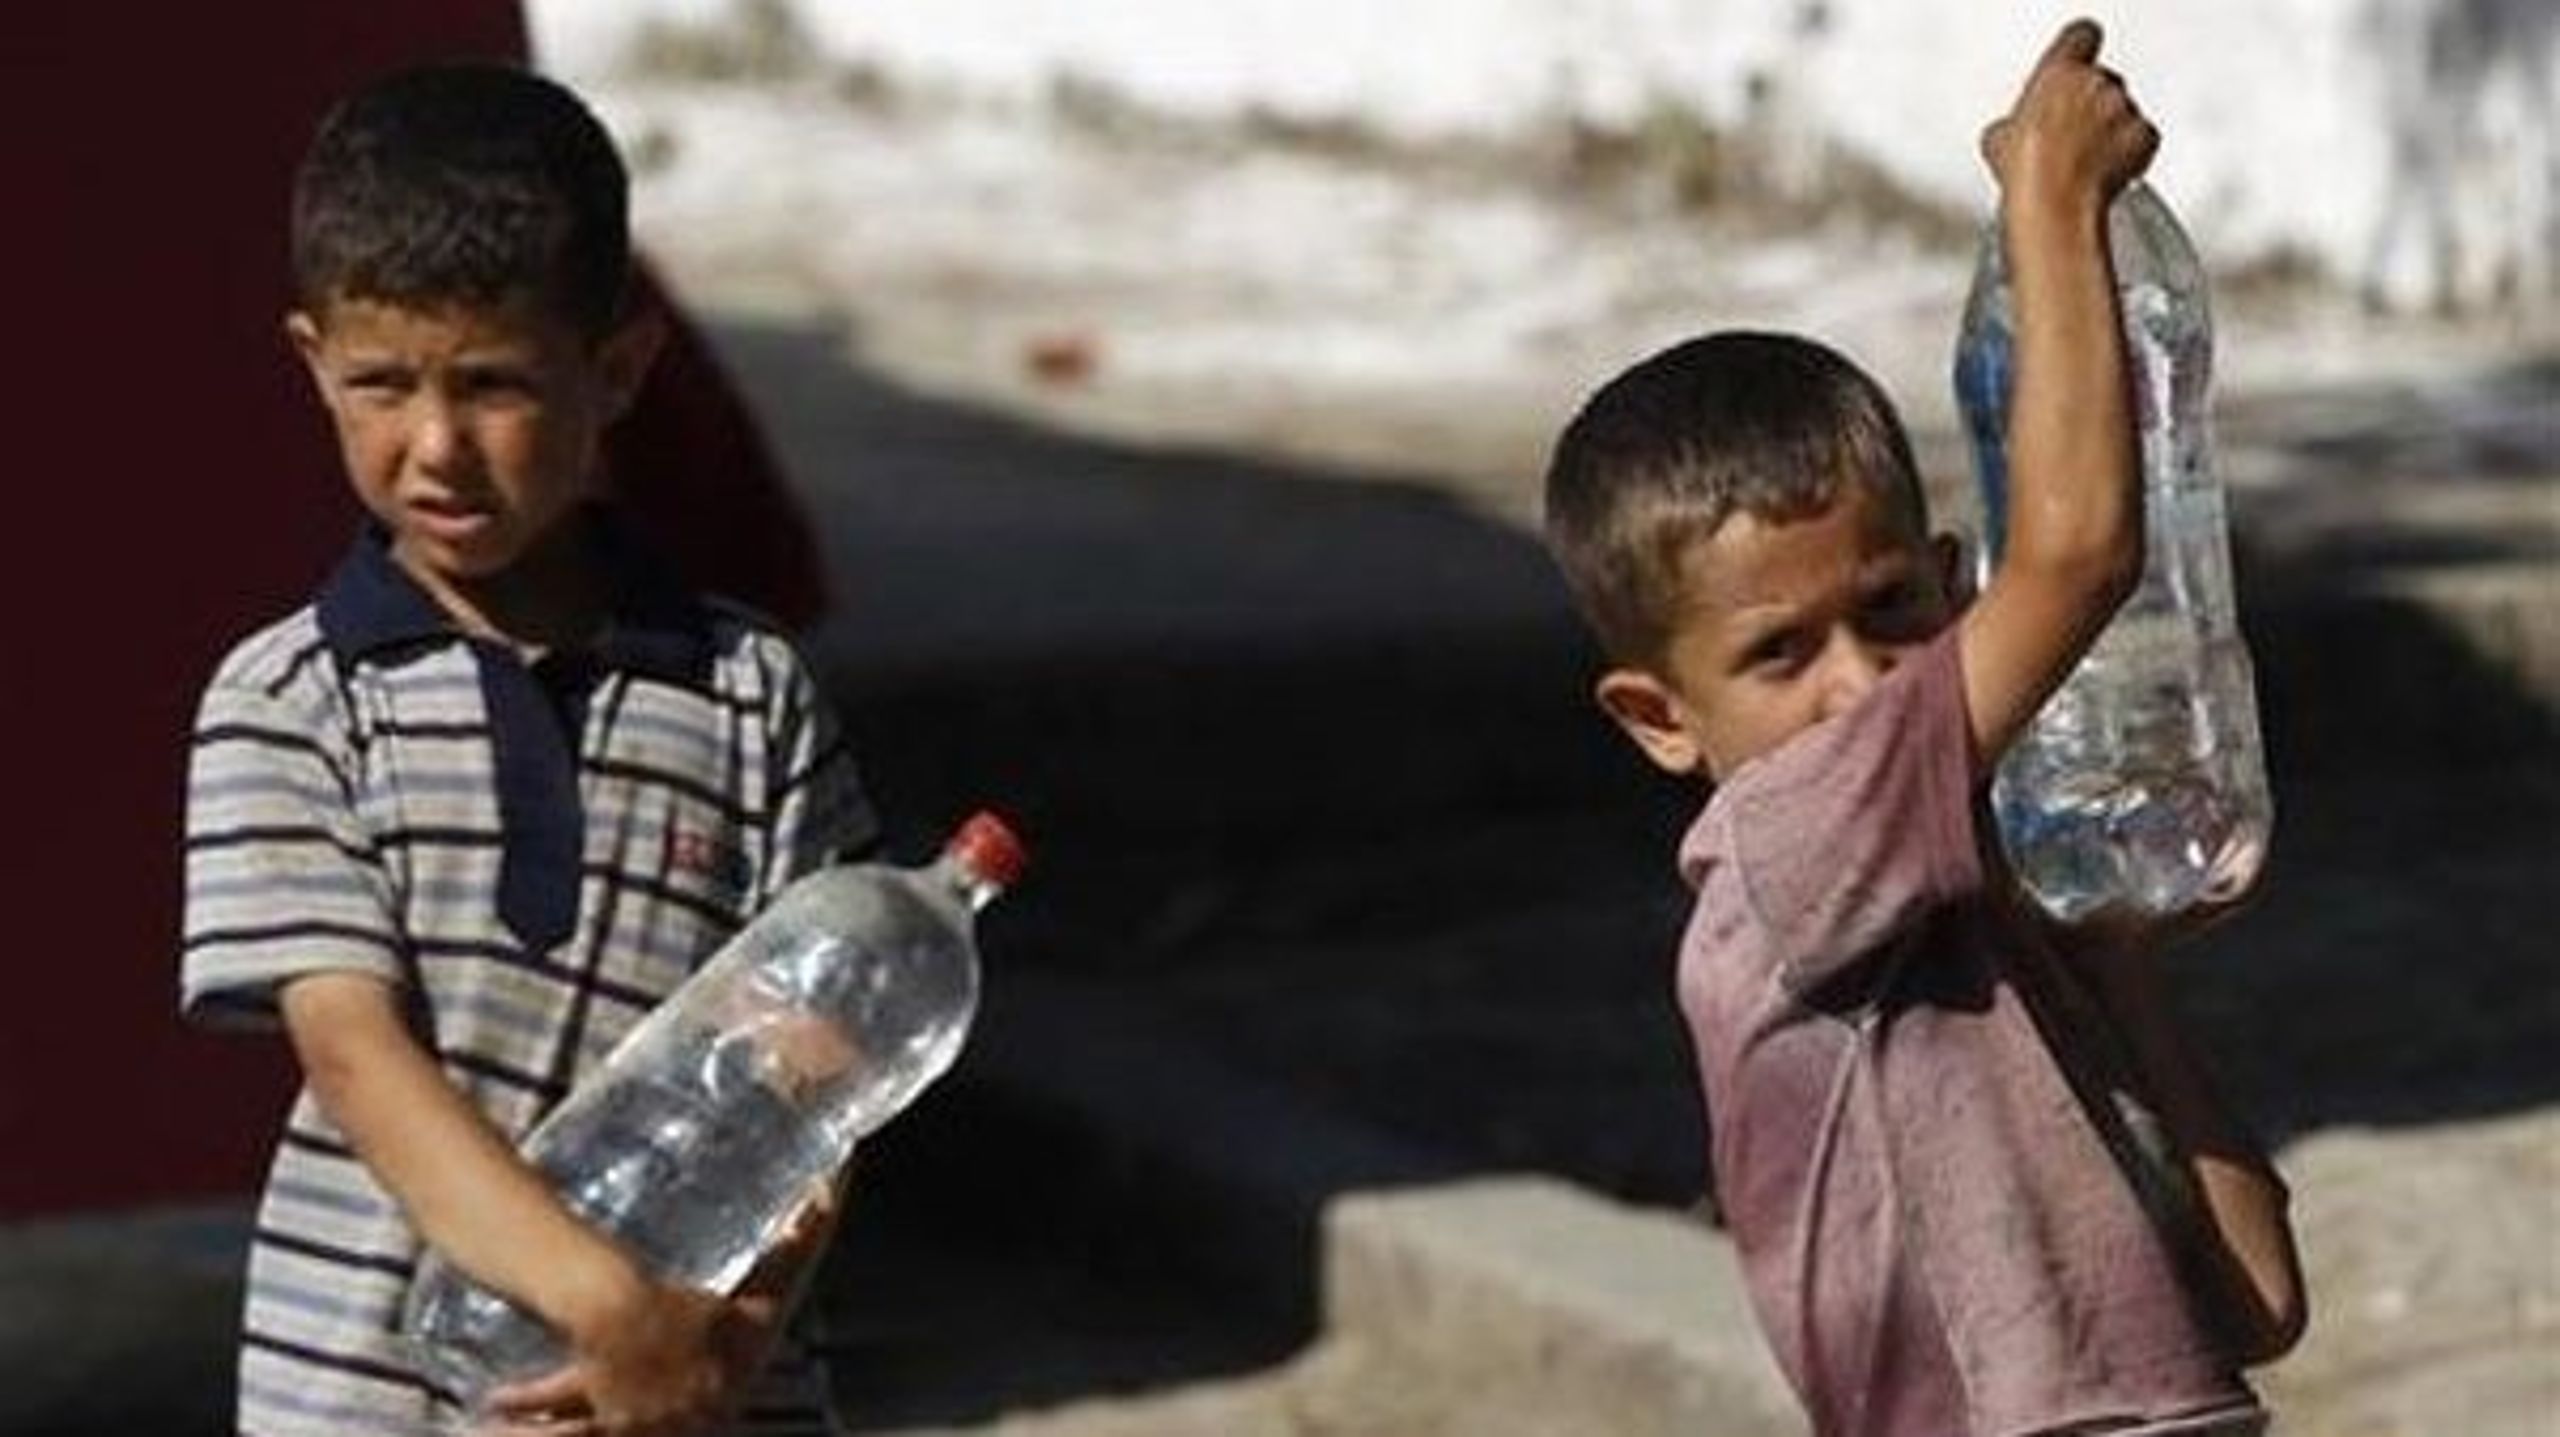 Vand, elektricitet og&nbsp;varme, skoler og sundhedstilbud&nbsp;er stadig en massiv mangelvare i Syrien, skriver Line Grove Hermansen, Unicef.